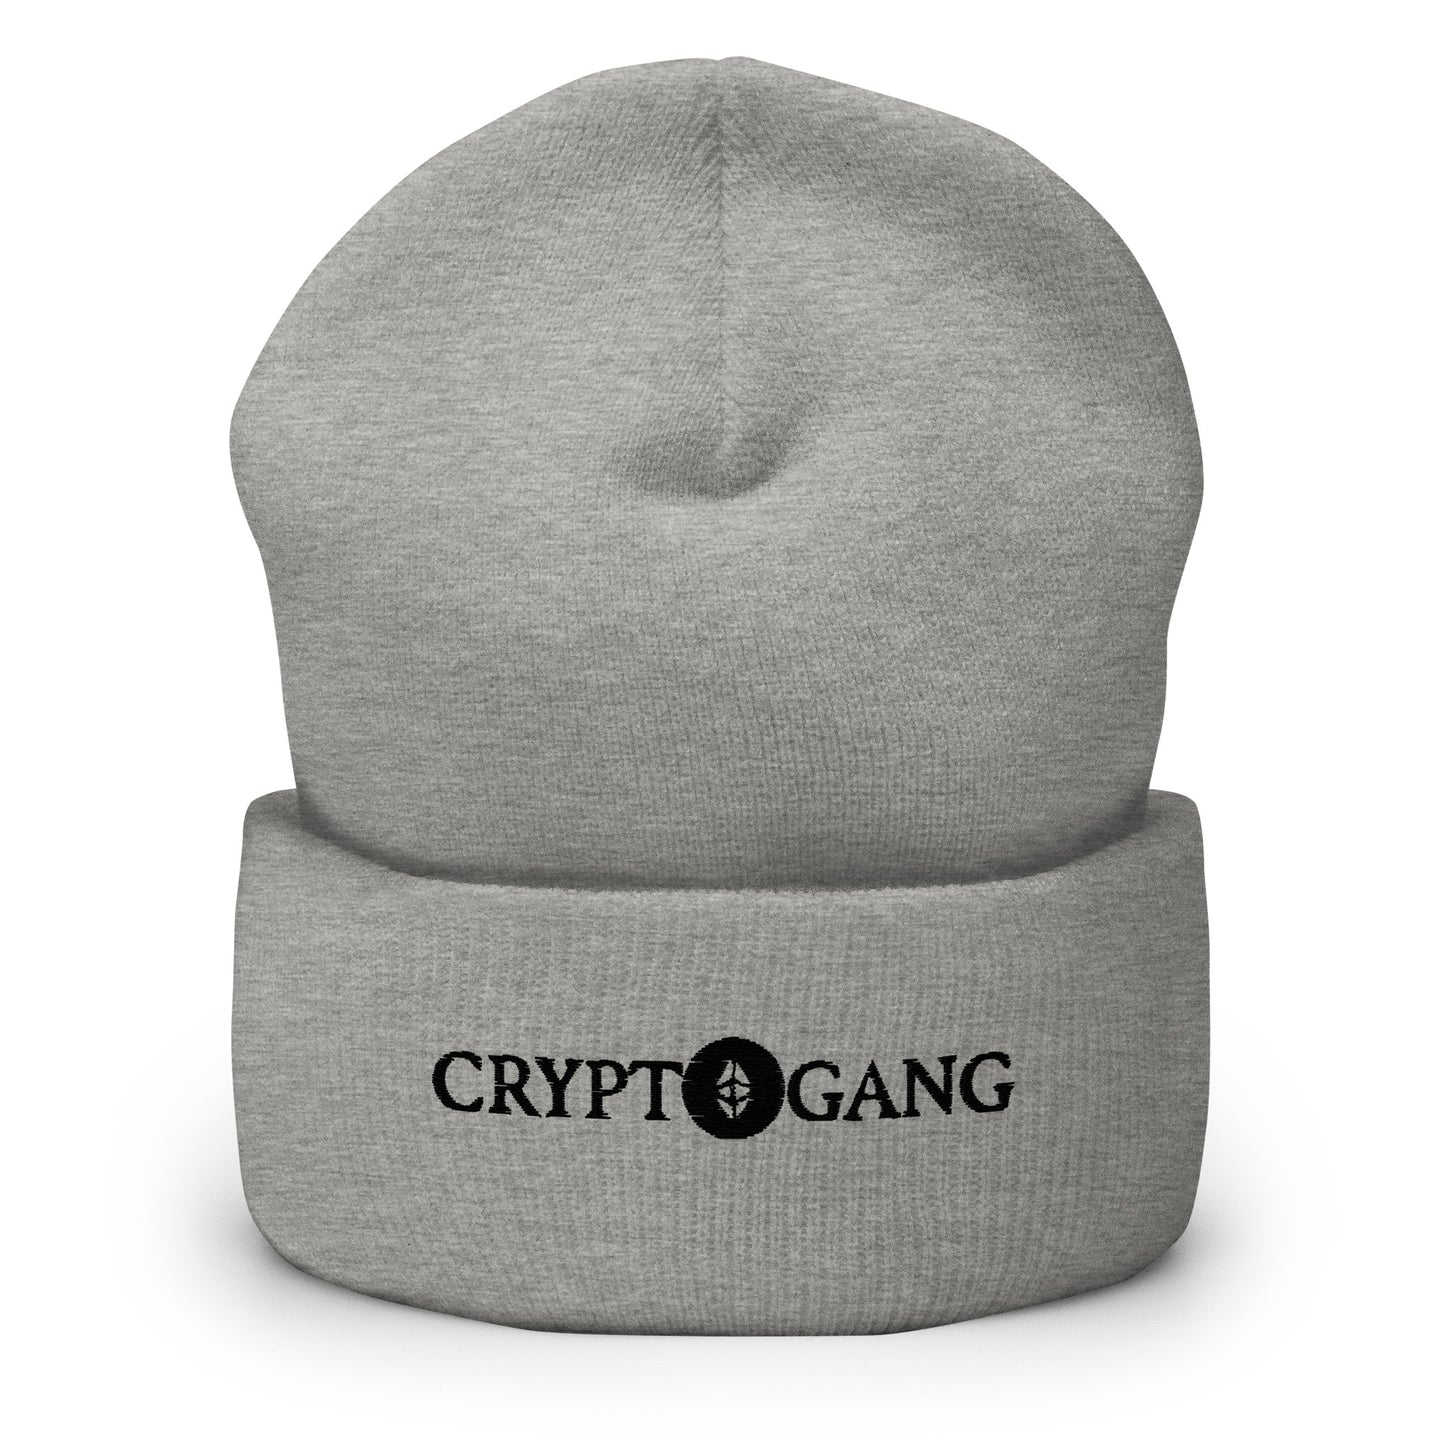 CRYPTOGANG - Mütze mit Umschlag bestickt